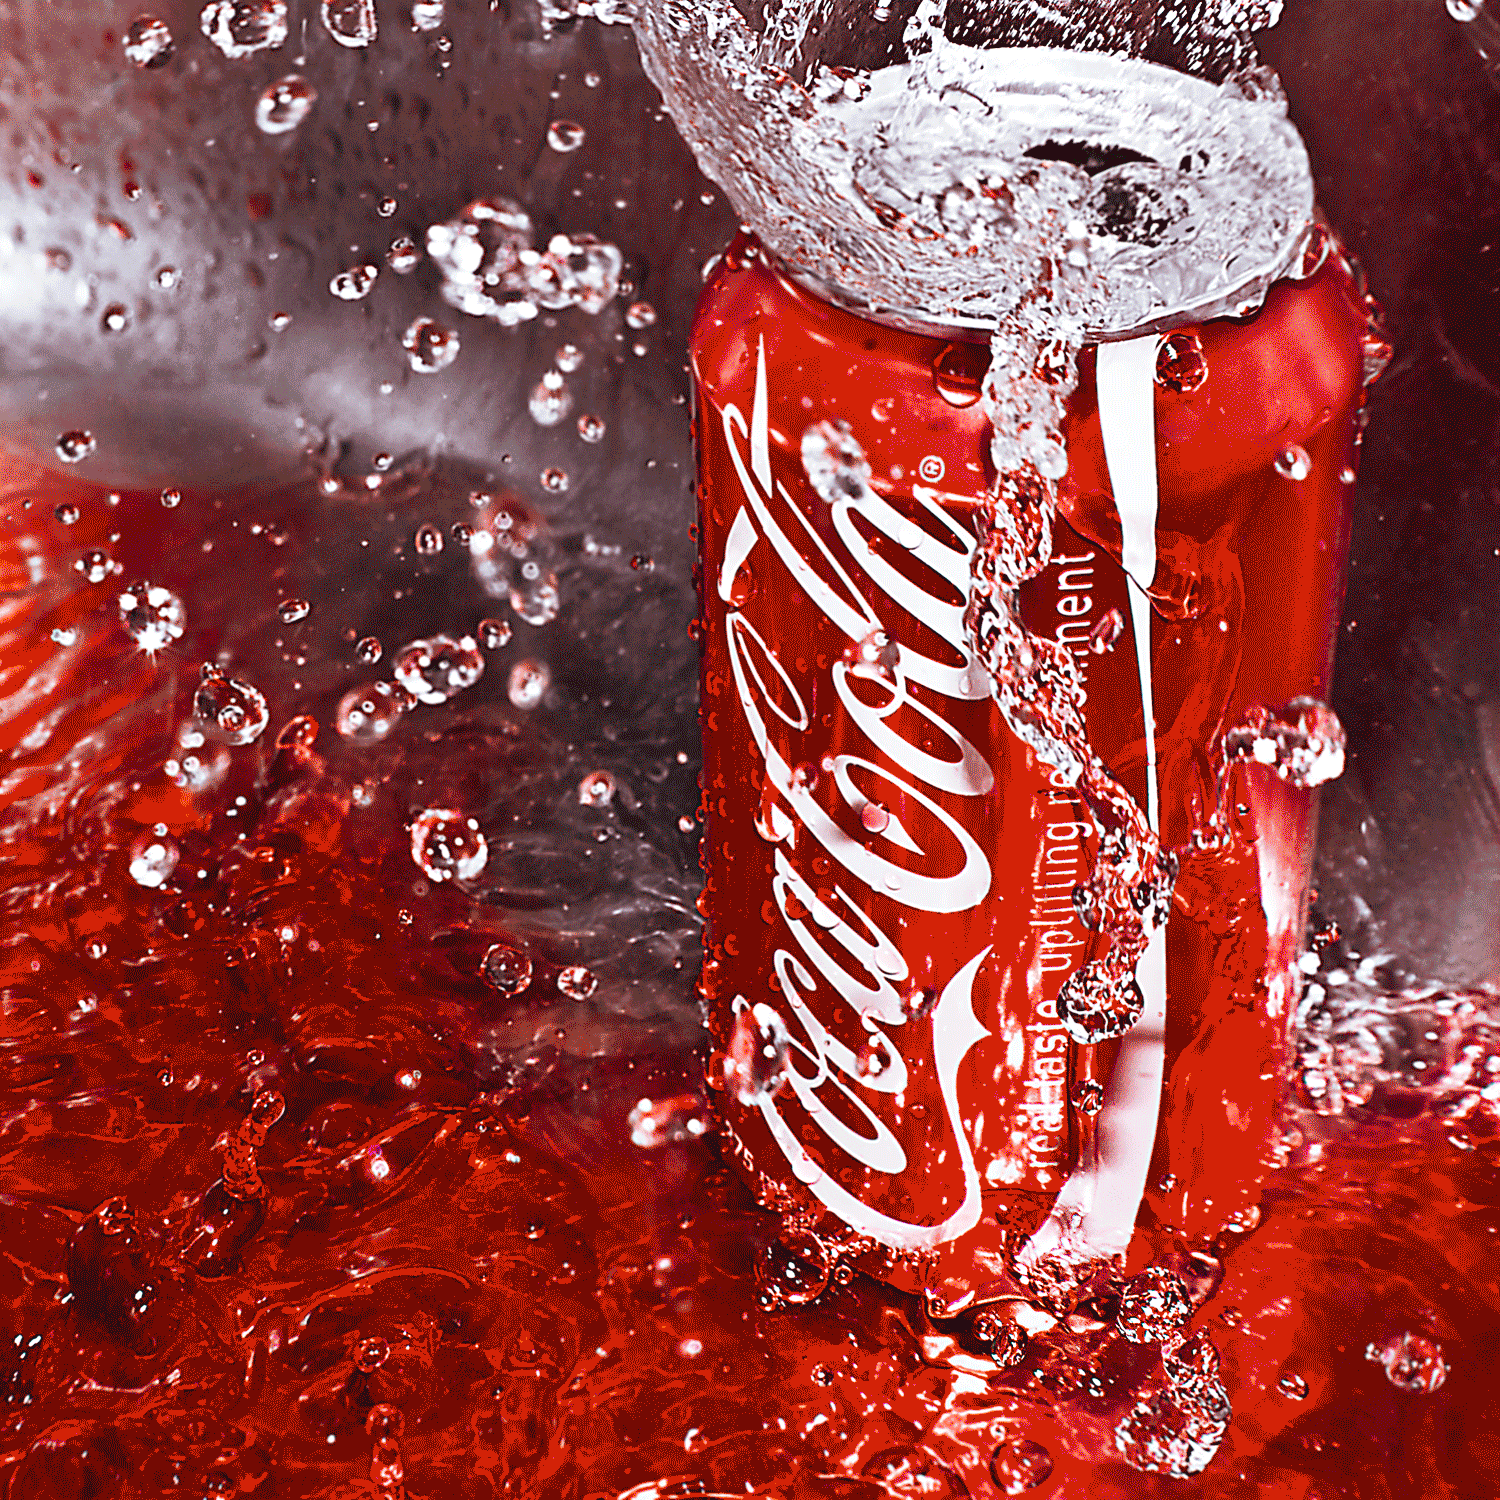 ༺♥༻* UN MUNDO DE COLORES ༺♥༻*  Coca_cola_in_the_rainbow_by_princesssaphron-d389szv